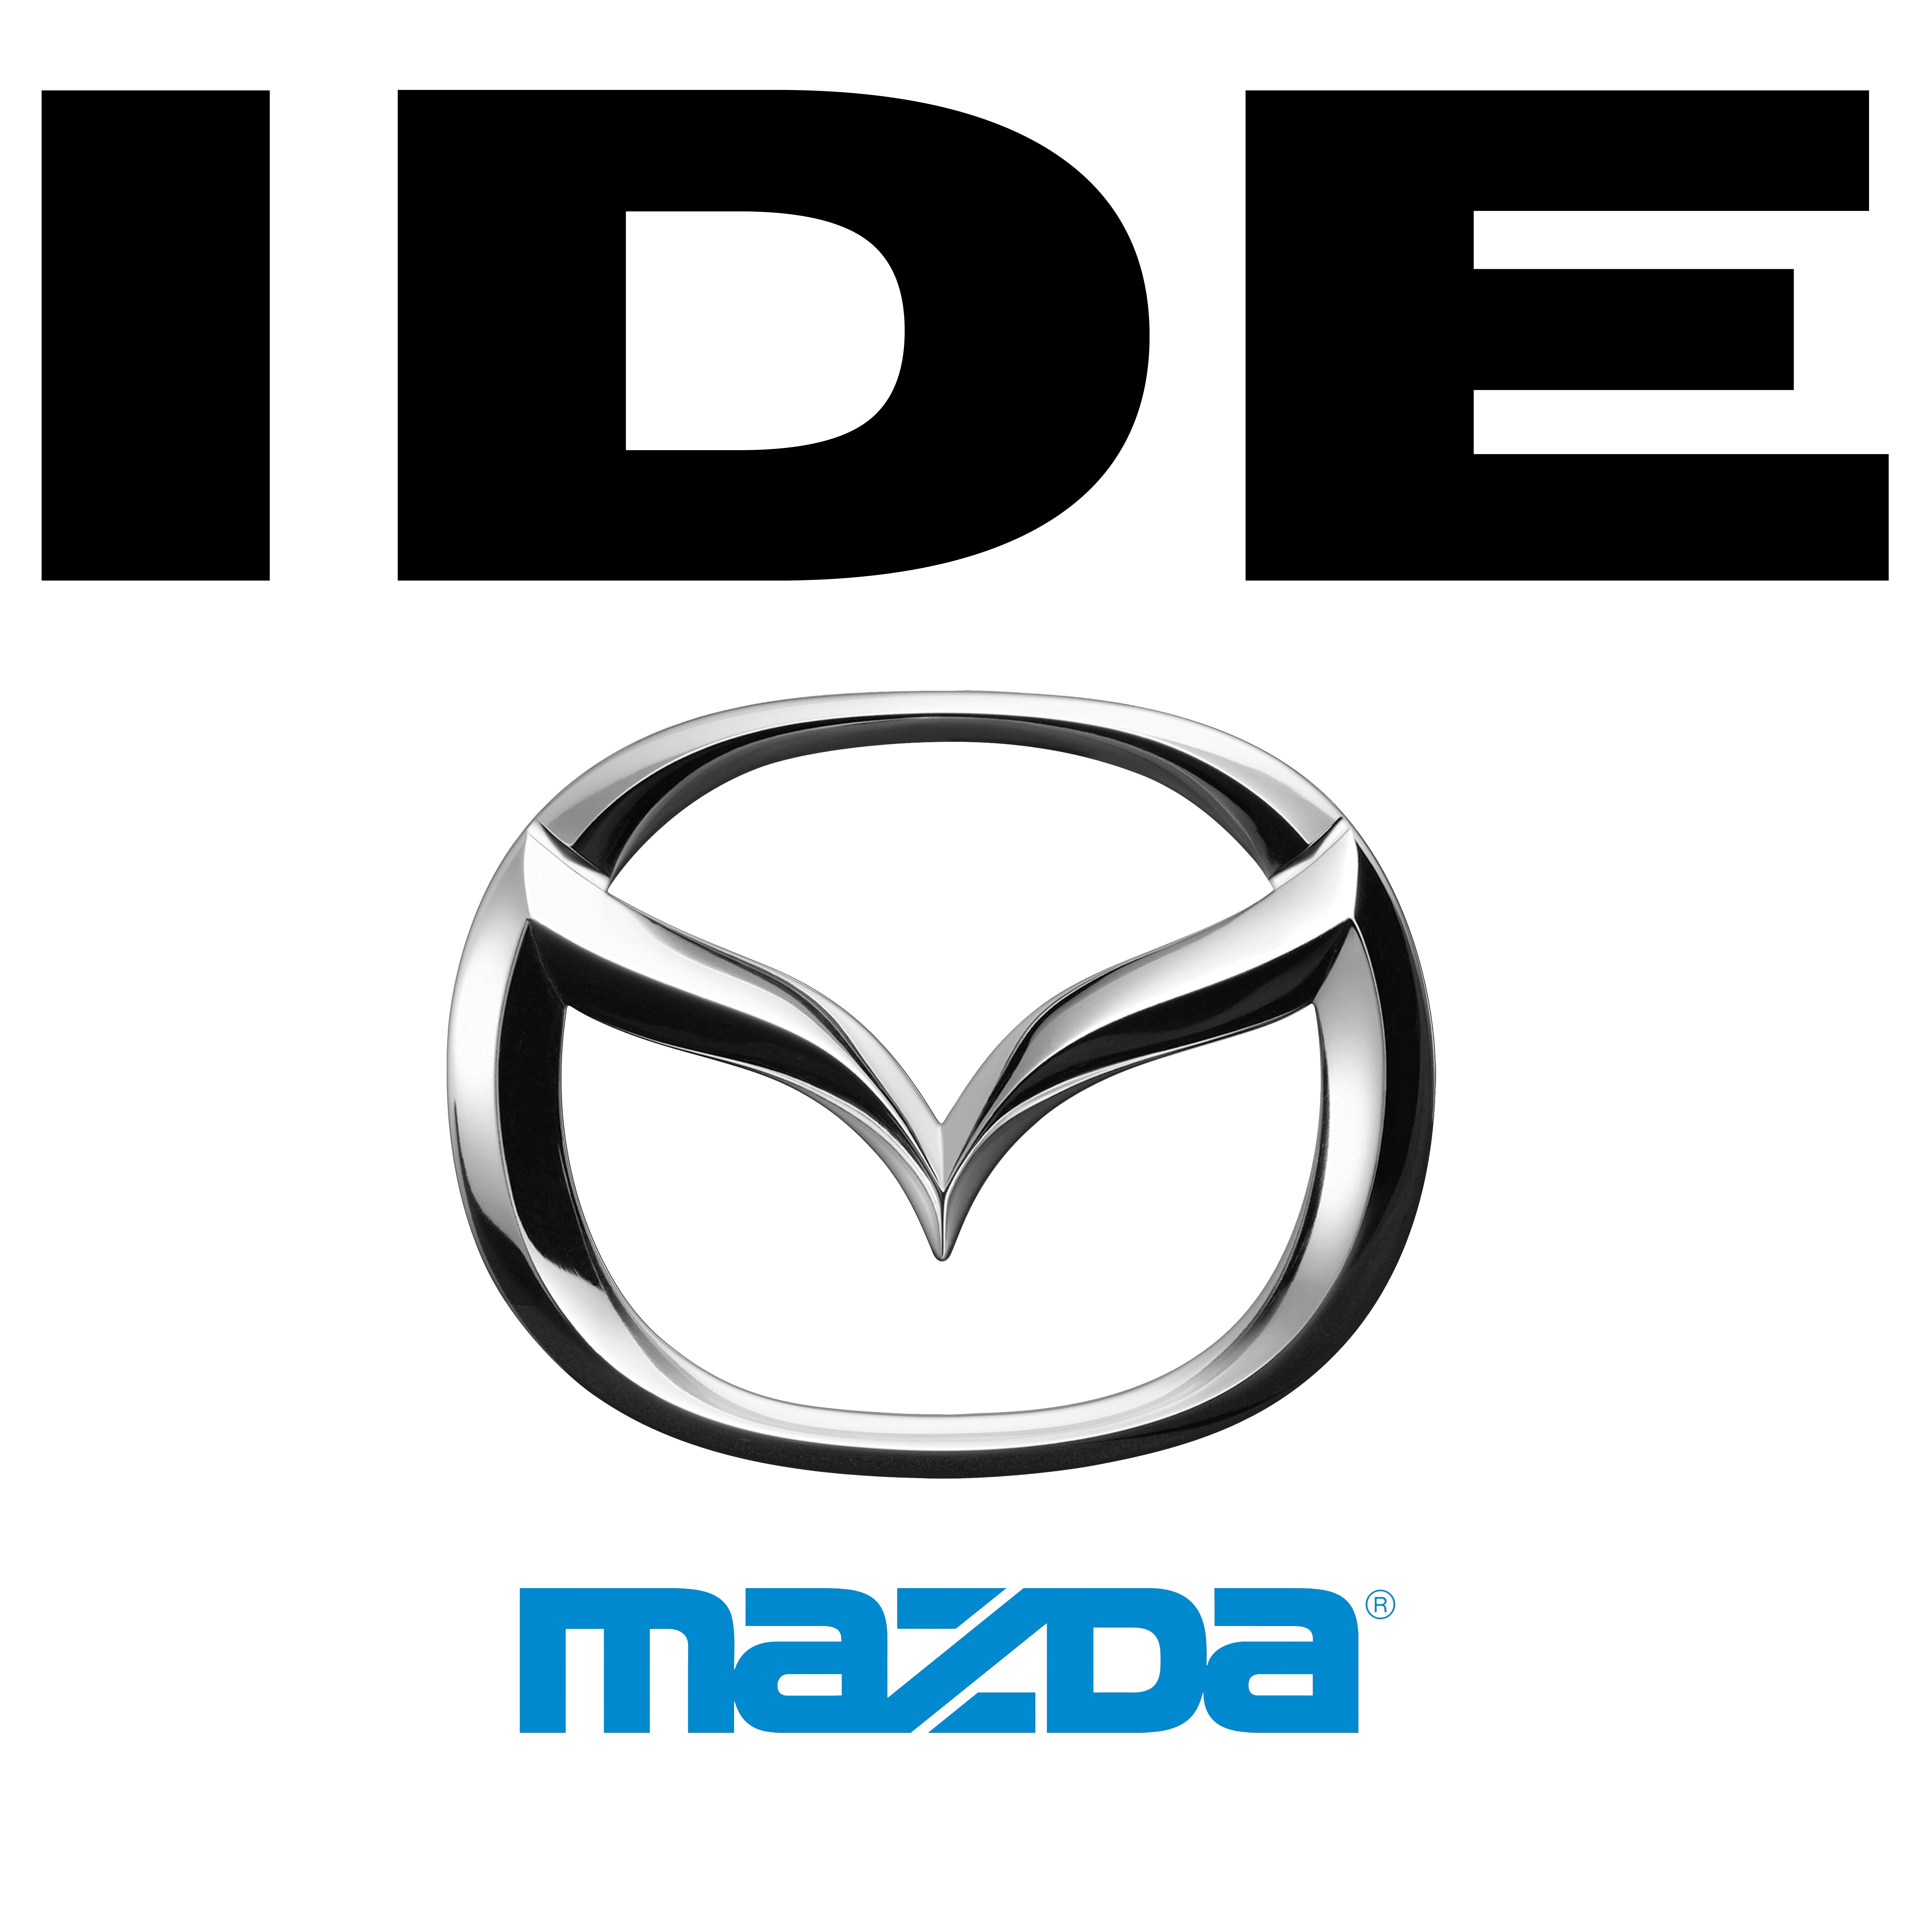 Ide Mazda